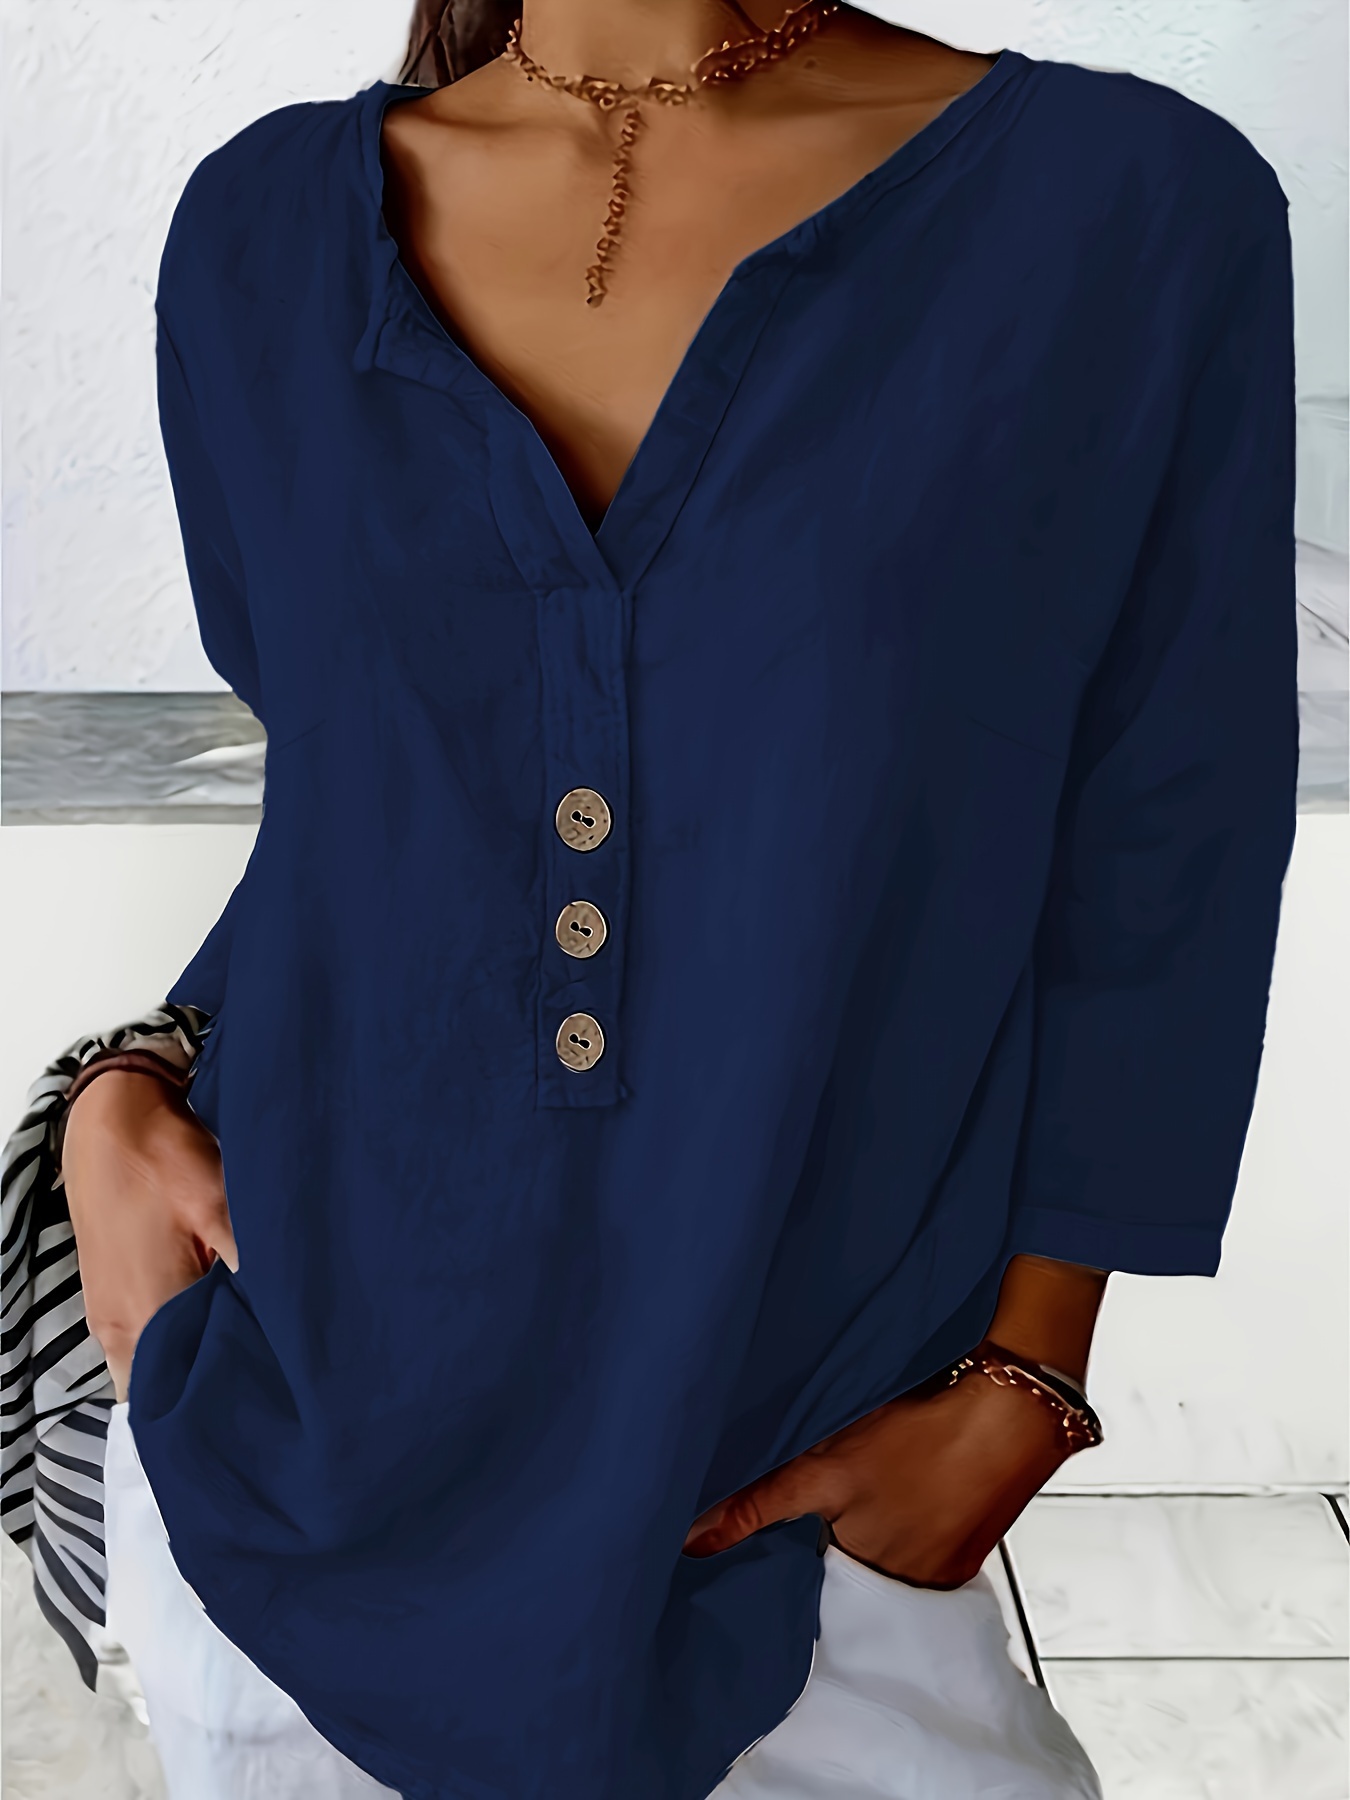 Lady Cotton Linen Shirt Tops Asymmetry Button Long Sleeve Blouse Retro  Casual